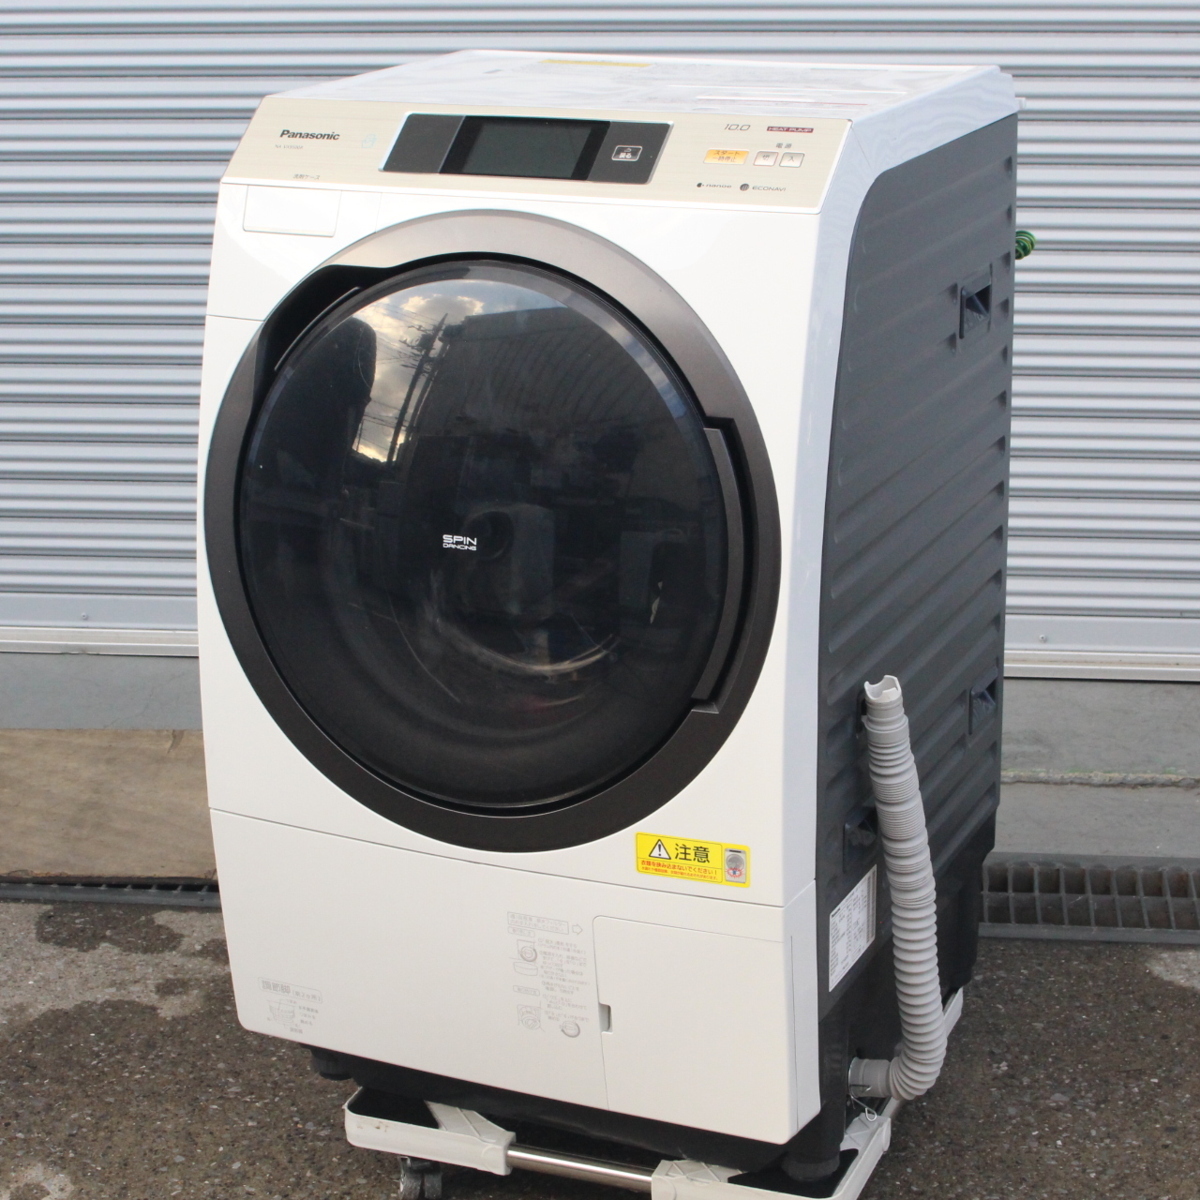 東京都町田市にて パナソニック ドラム式電気洗濯乾燥機 NA-VX9500R 2015年製 を出張買取させて頂きました。